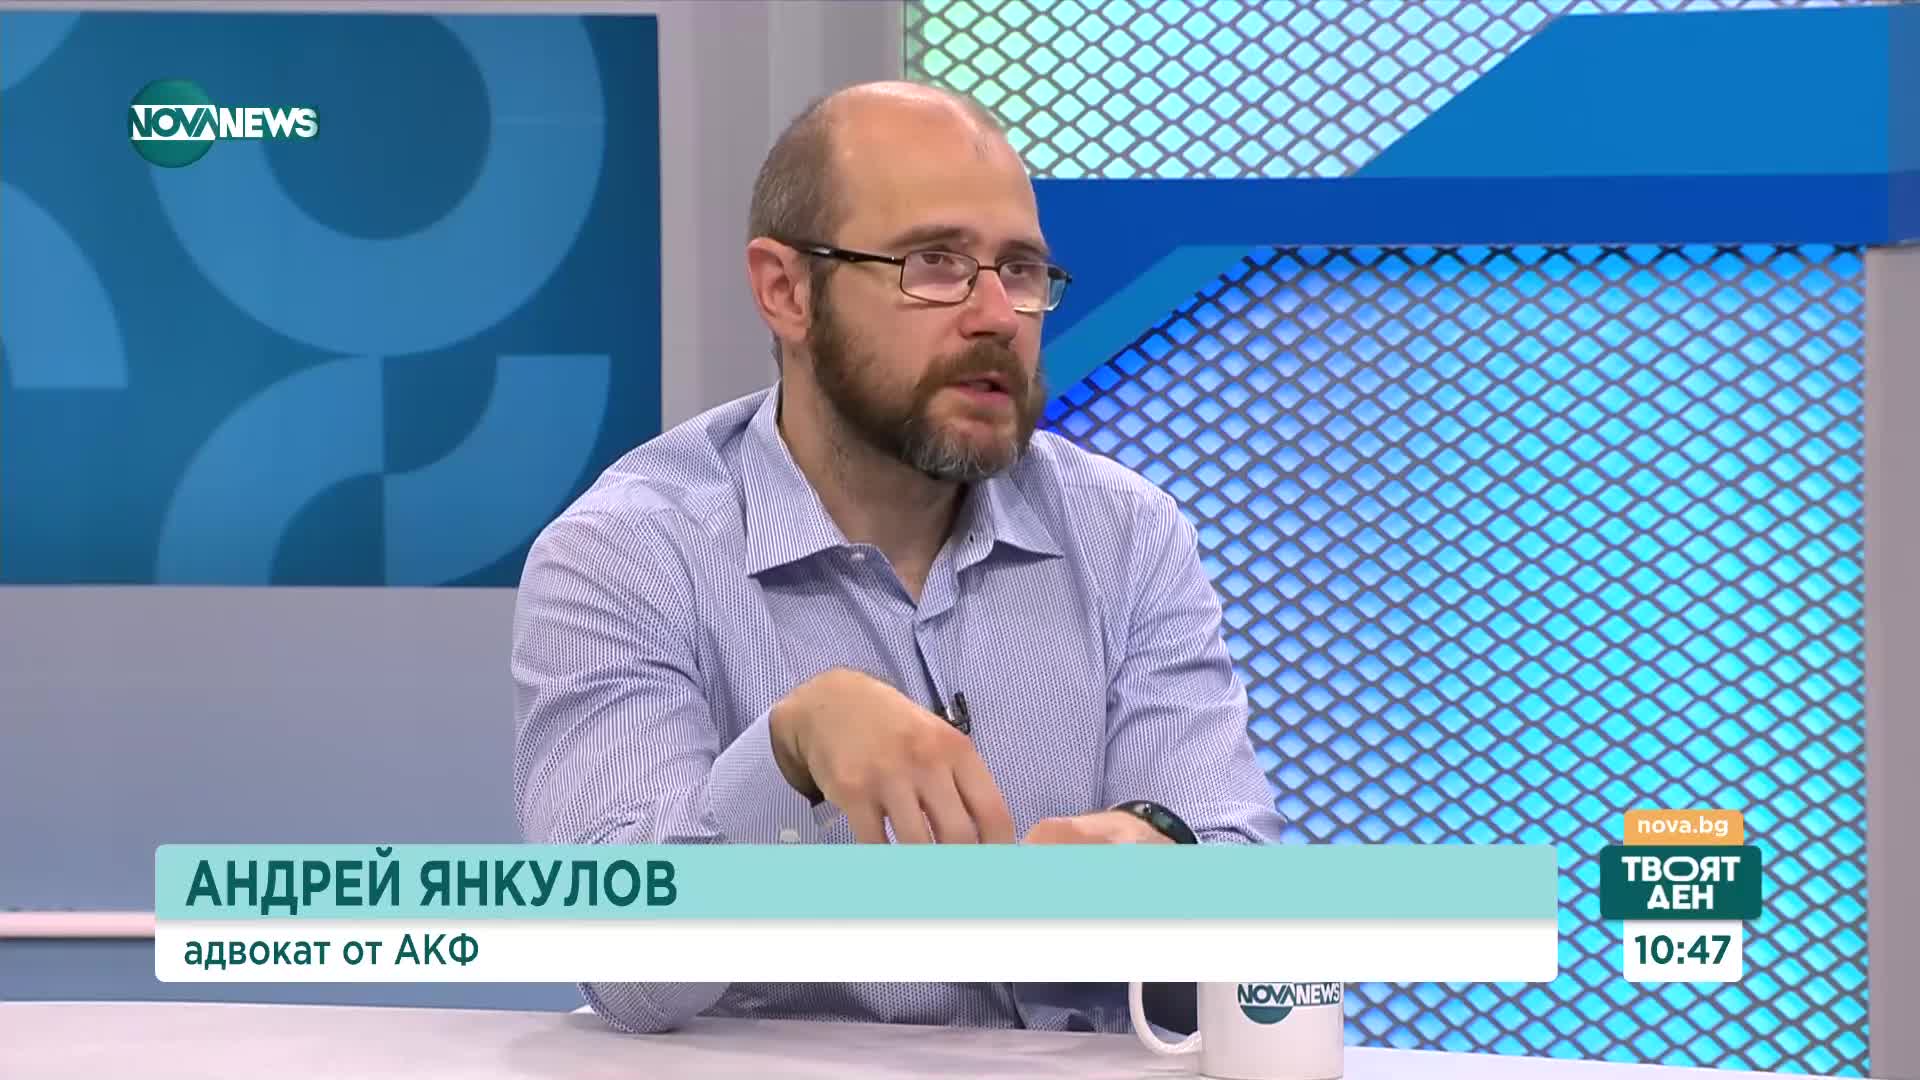 Анрей Янкулов: Преди да се пристъпи към реформа в КПКОНПИ, трябва сериозен одит на работата ѝ